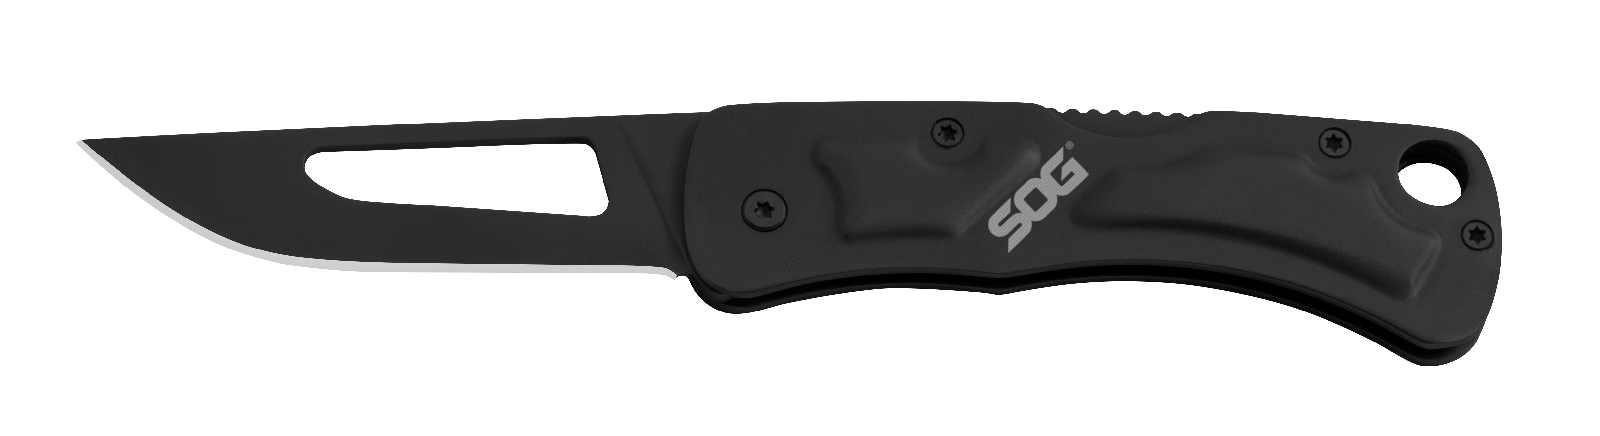 Складной нож Centi II - SOG CE1012, сталь 3Cr13MoV, рукоять нержавеющая сталь, чёрный